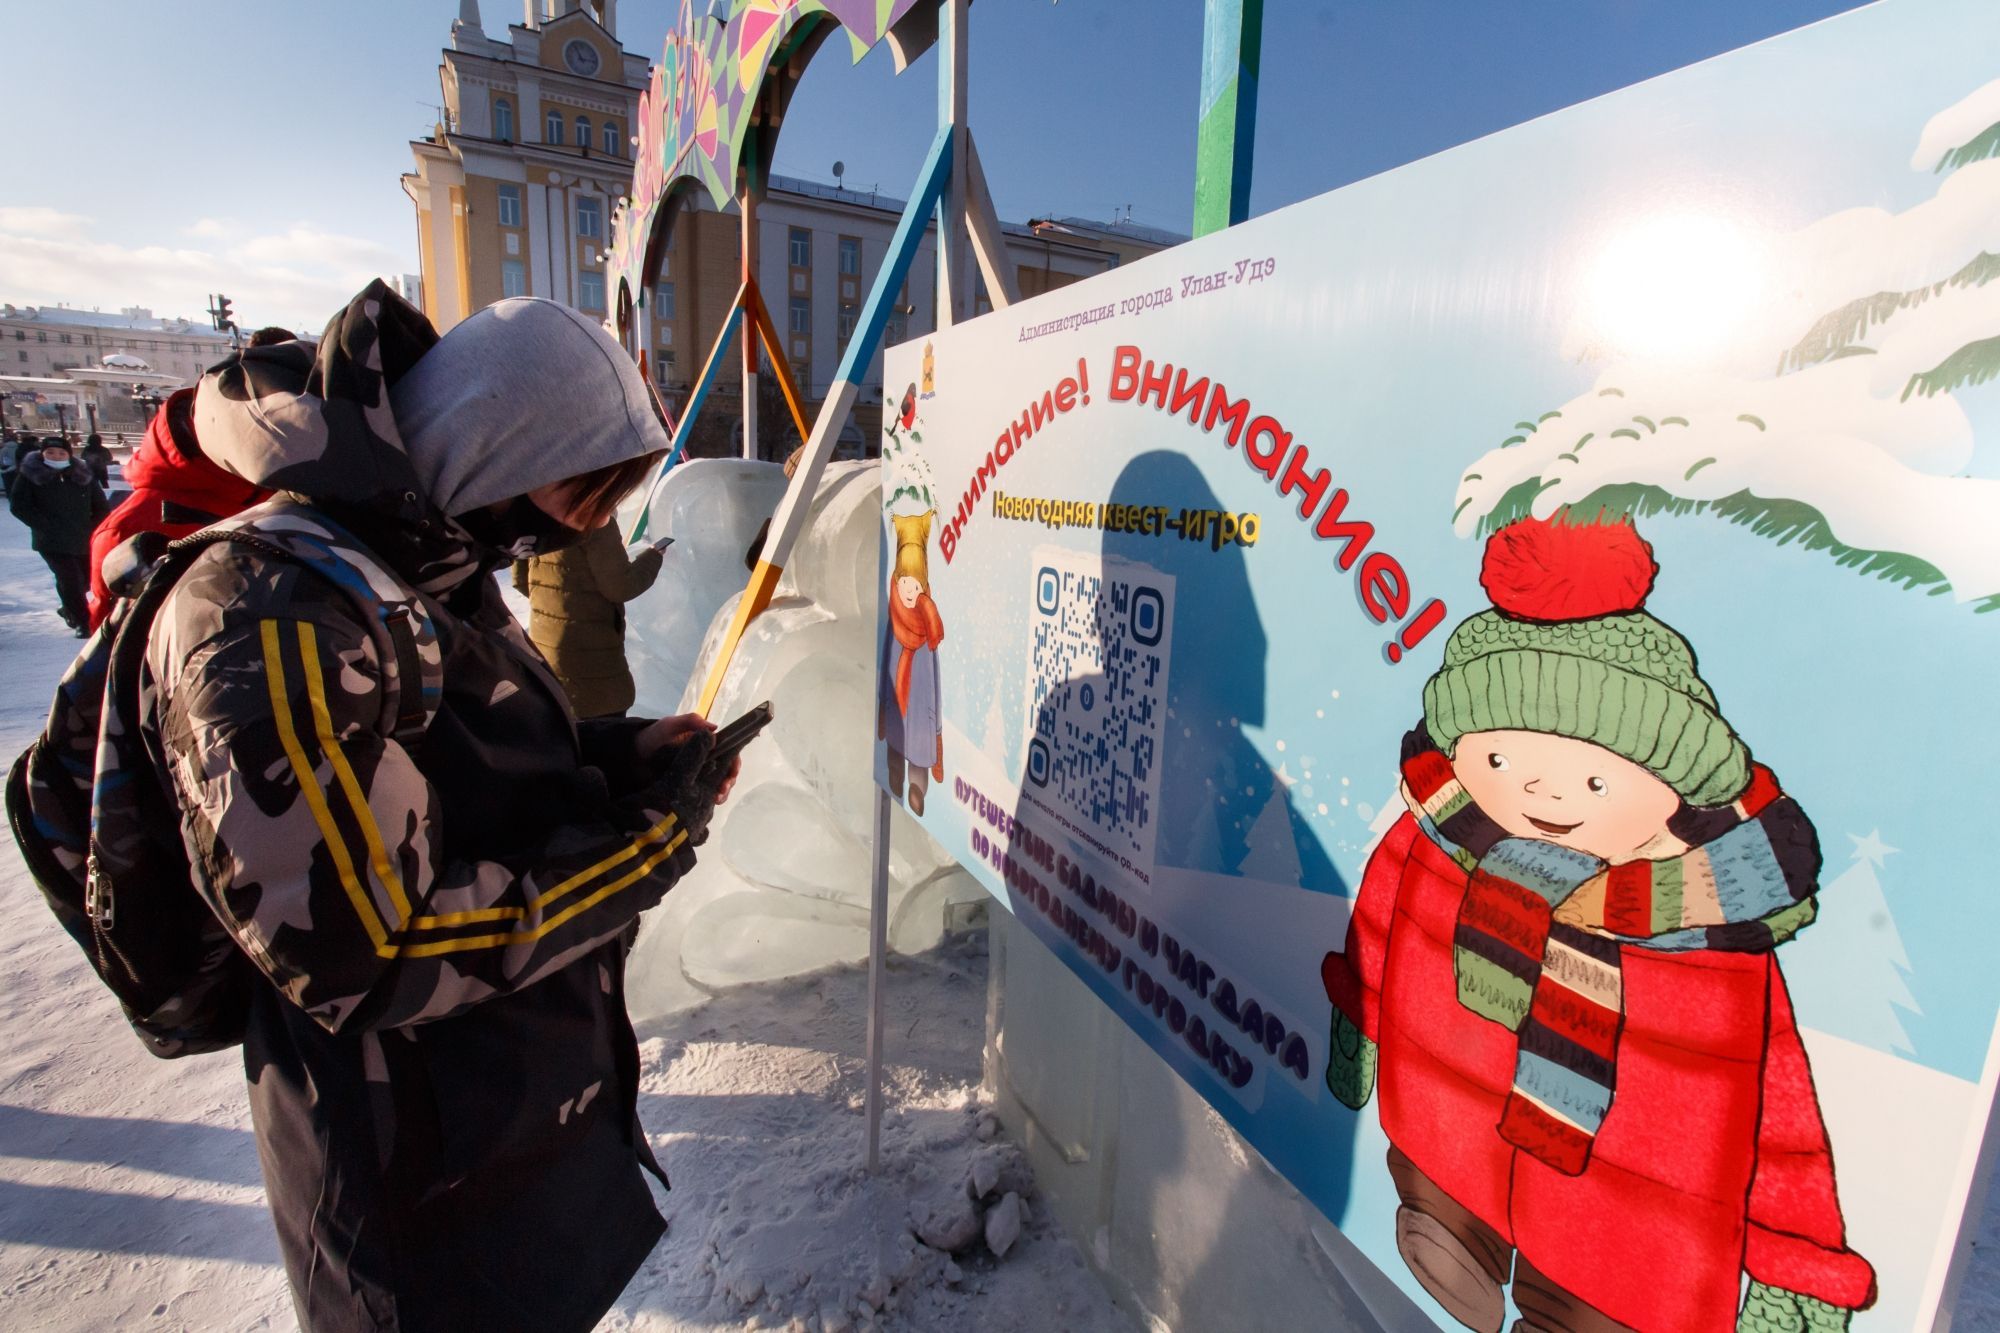 Фото В ледовом городке Улан-Удэ стартовала квест-игра (ФОТО)